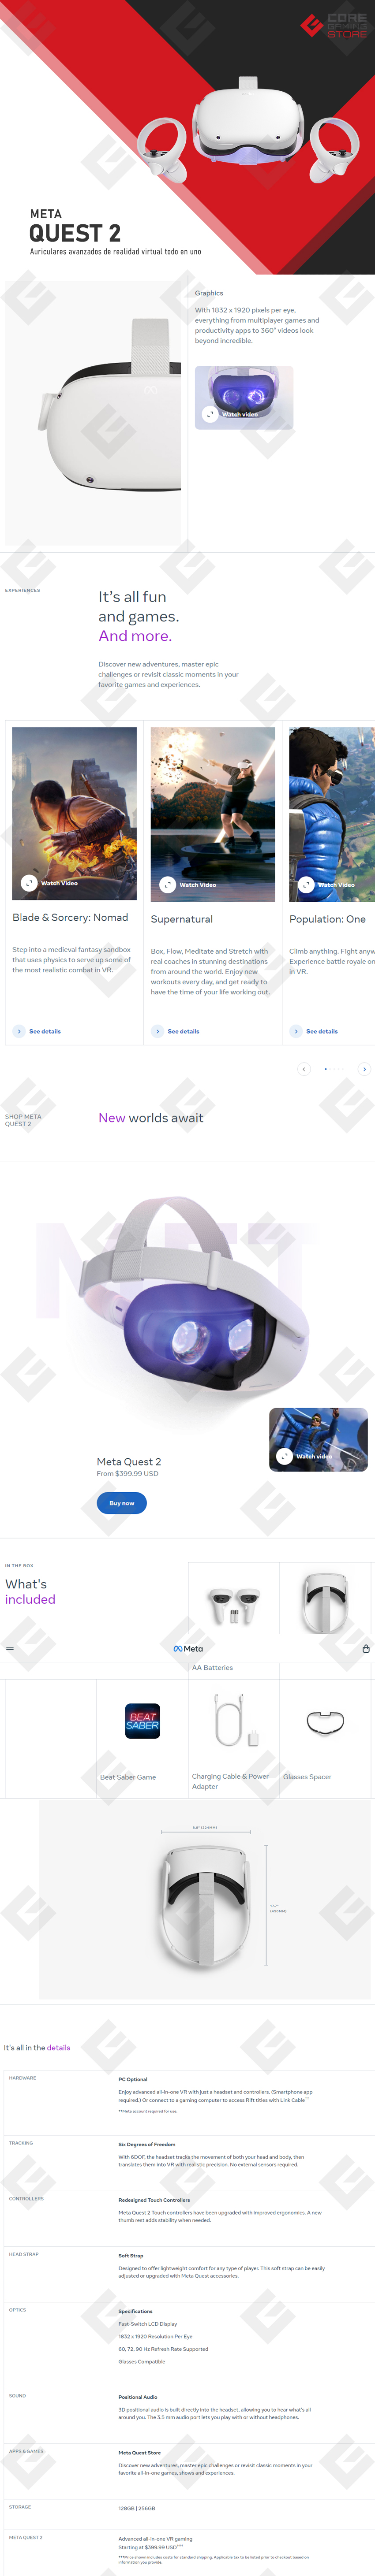 Meta y Tencent firman un acuerdo para vender las gafas Lite Quest